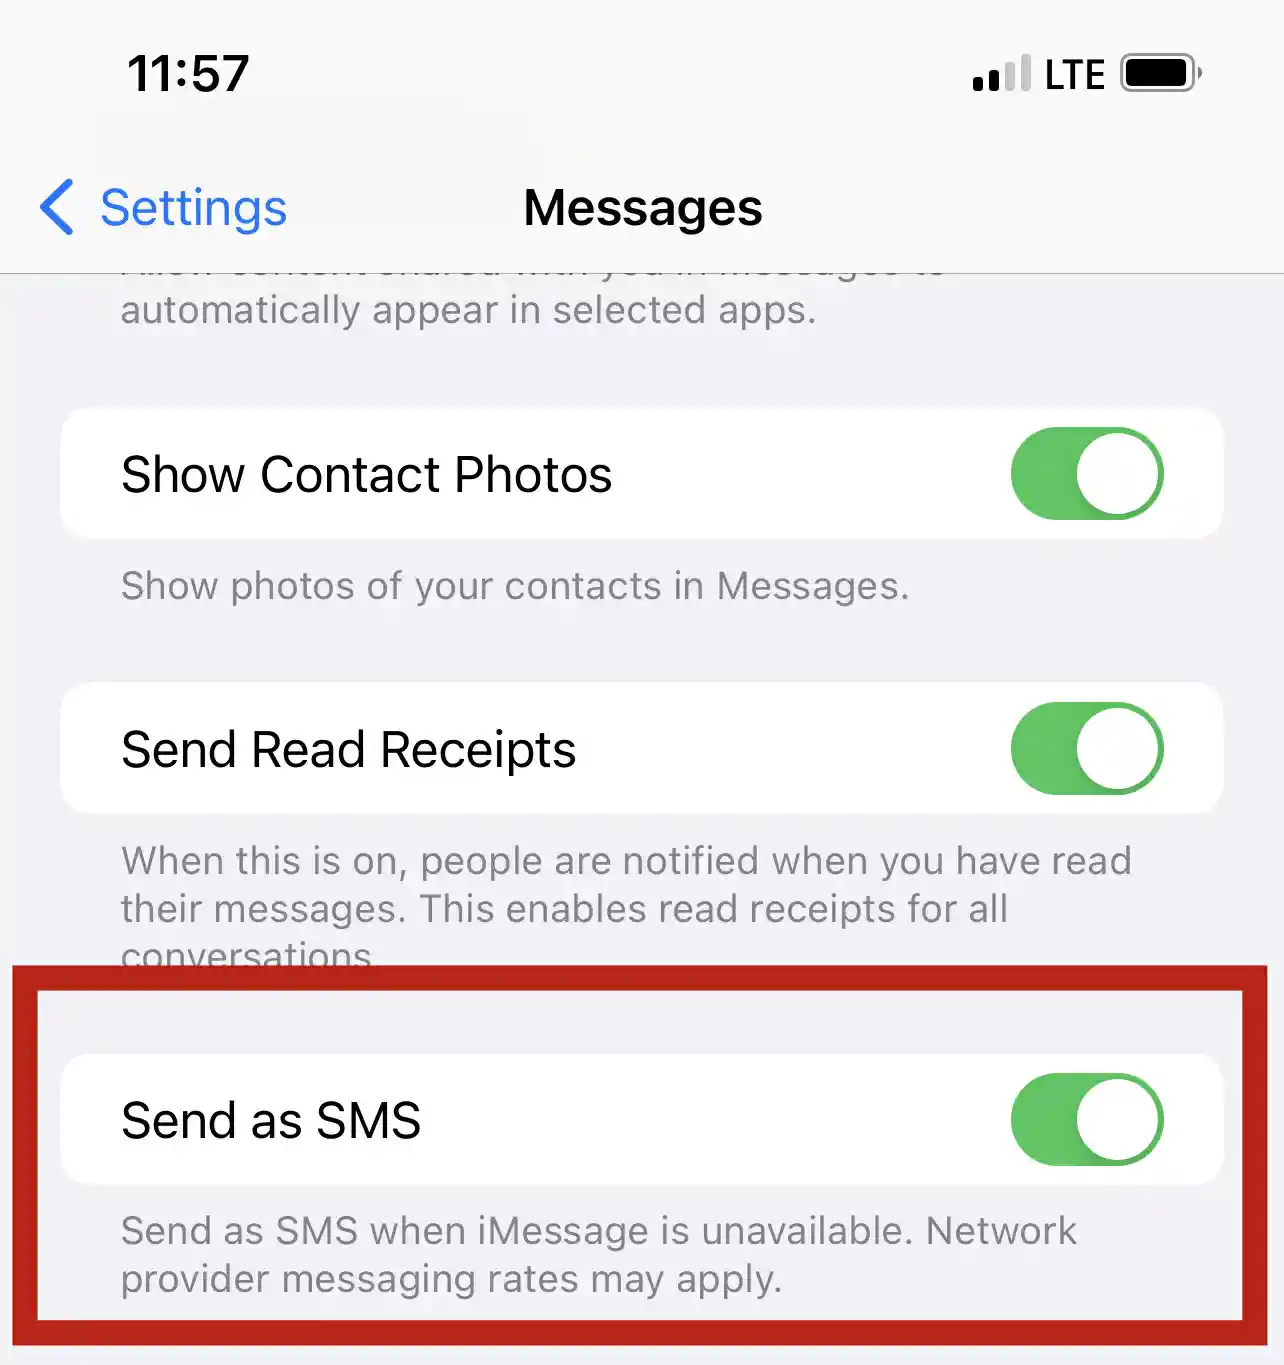 Enviar como sms cuando imessage no está disponible 